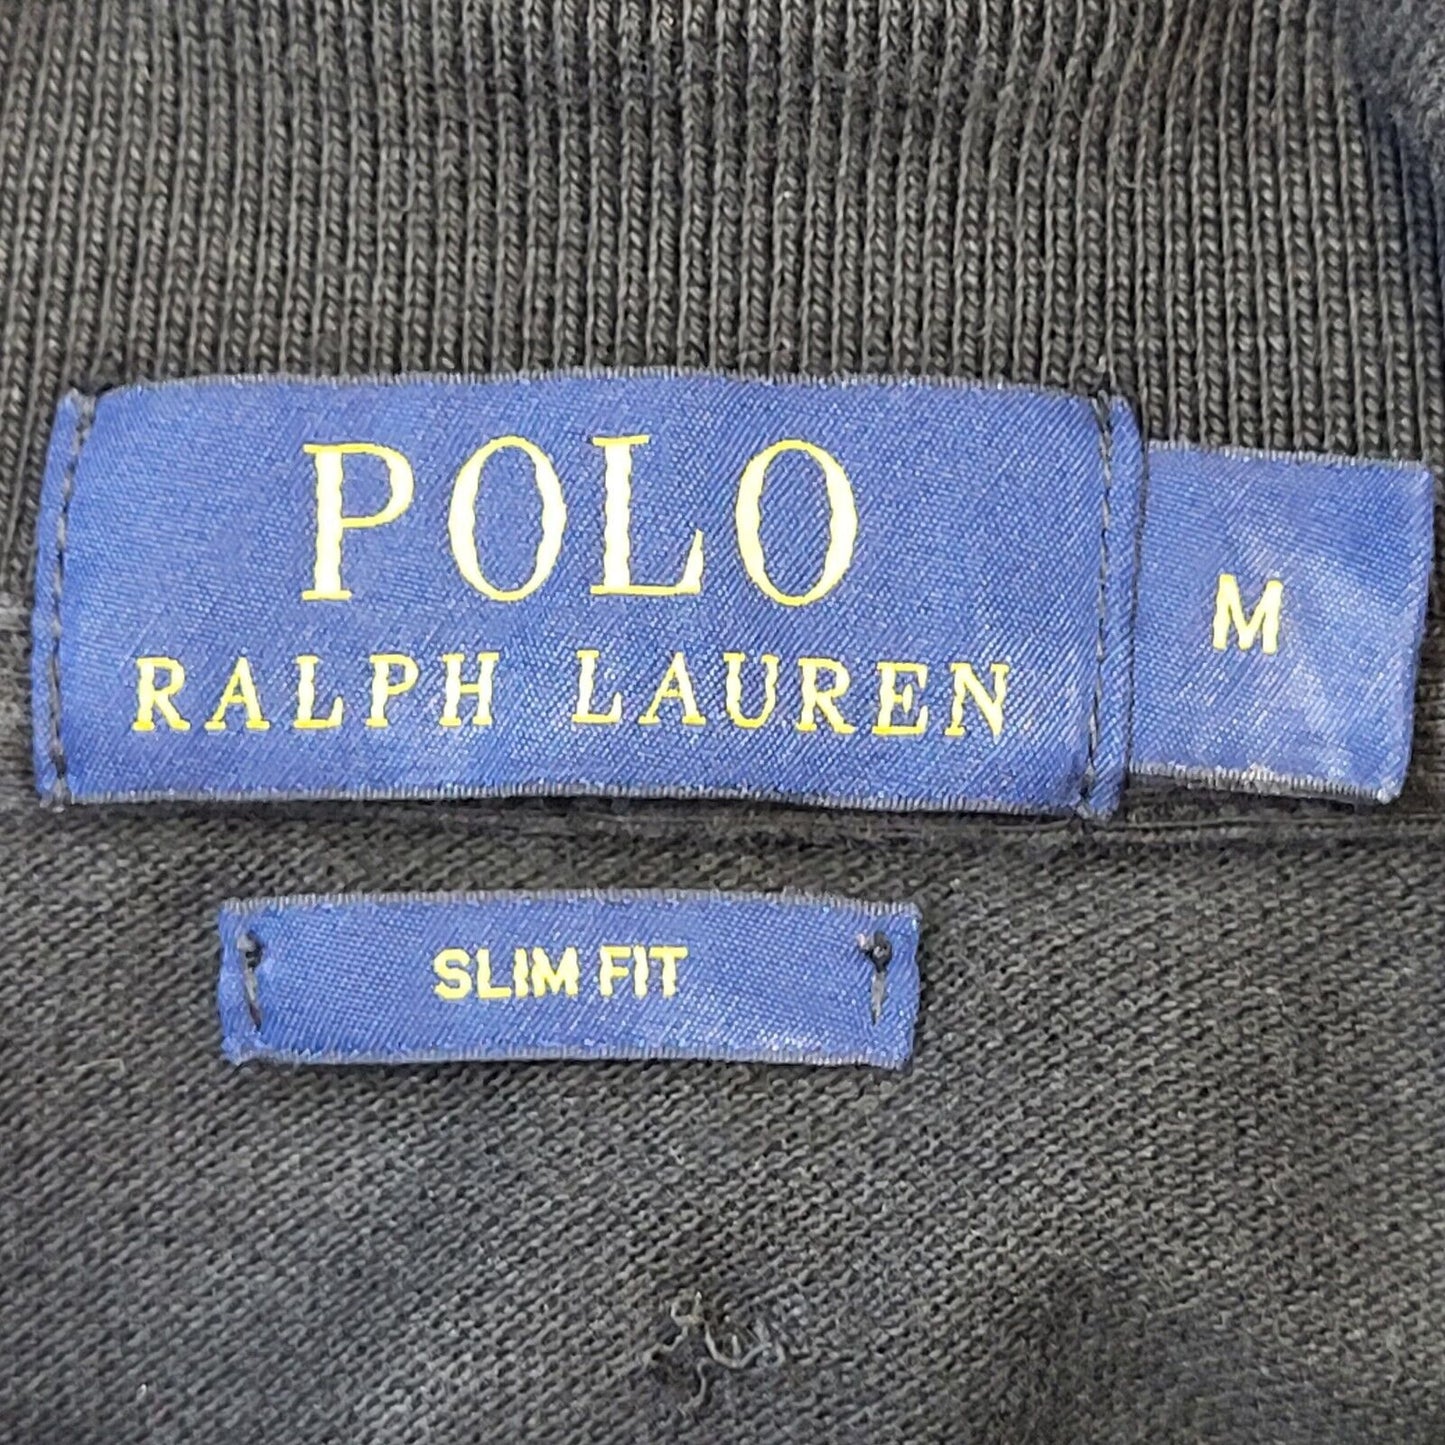 Polo Ralph Lauren Polo (M)